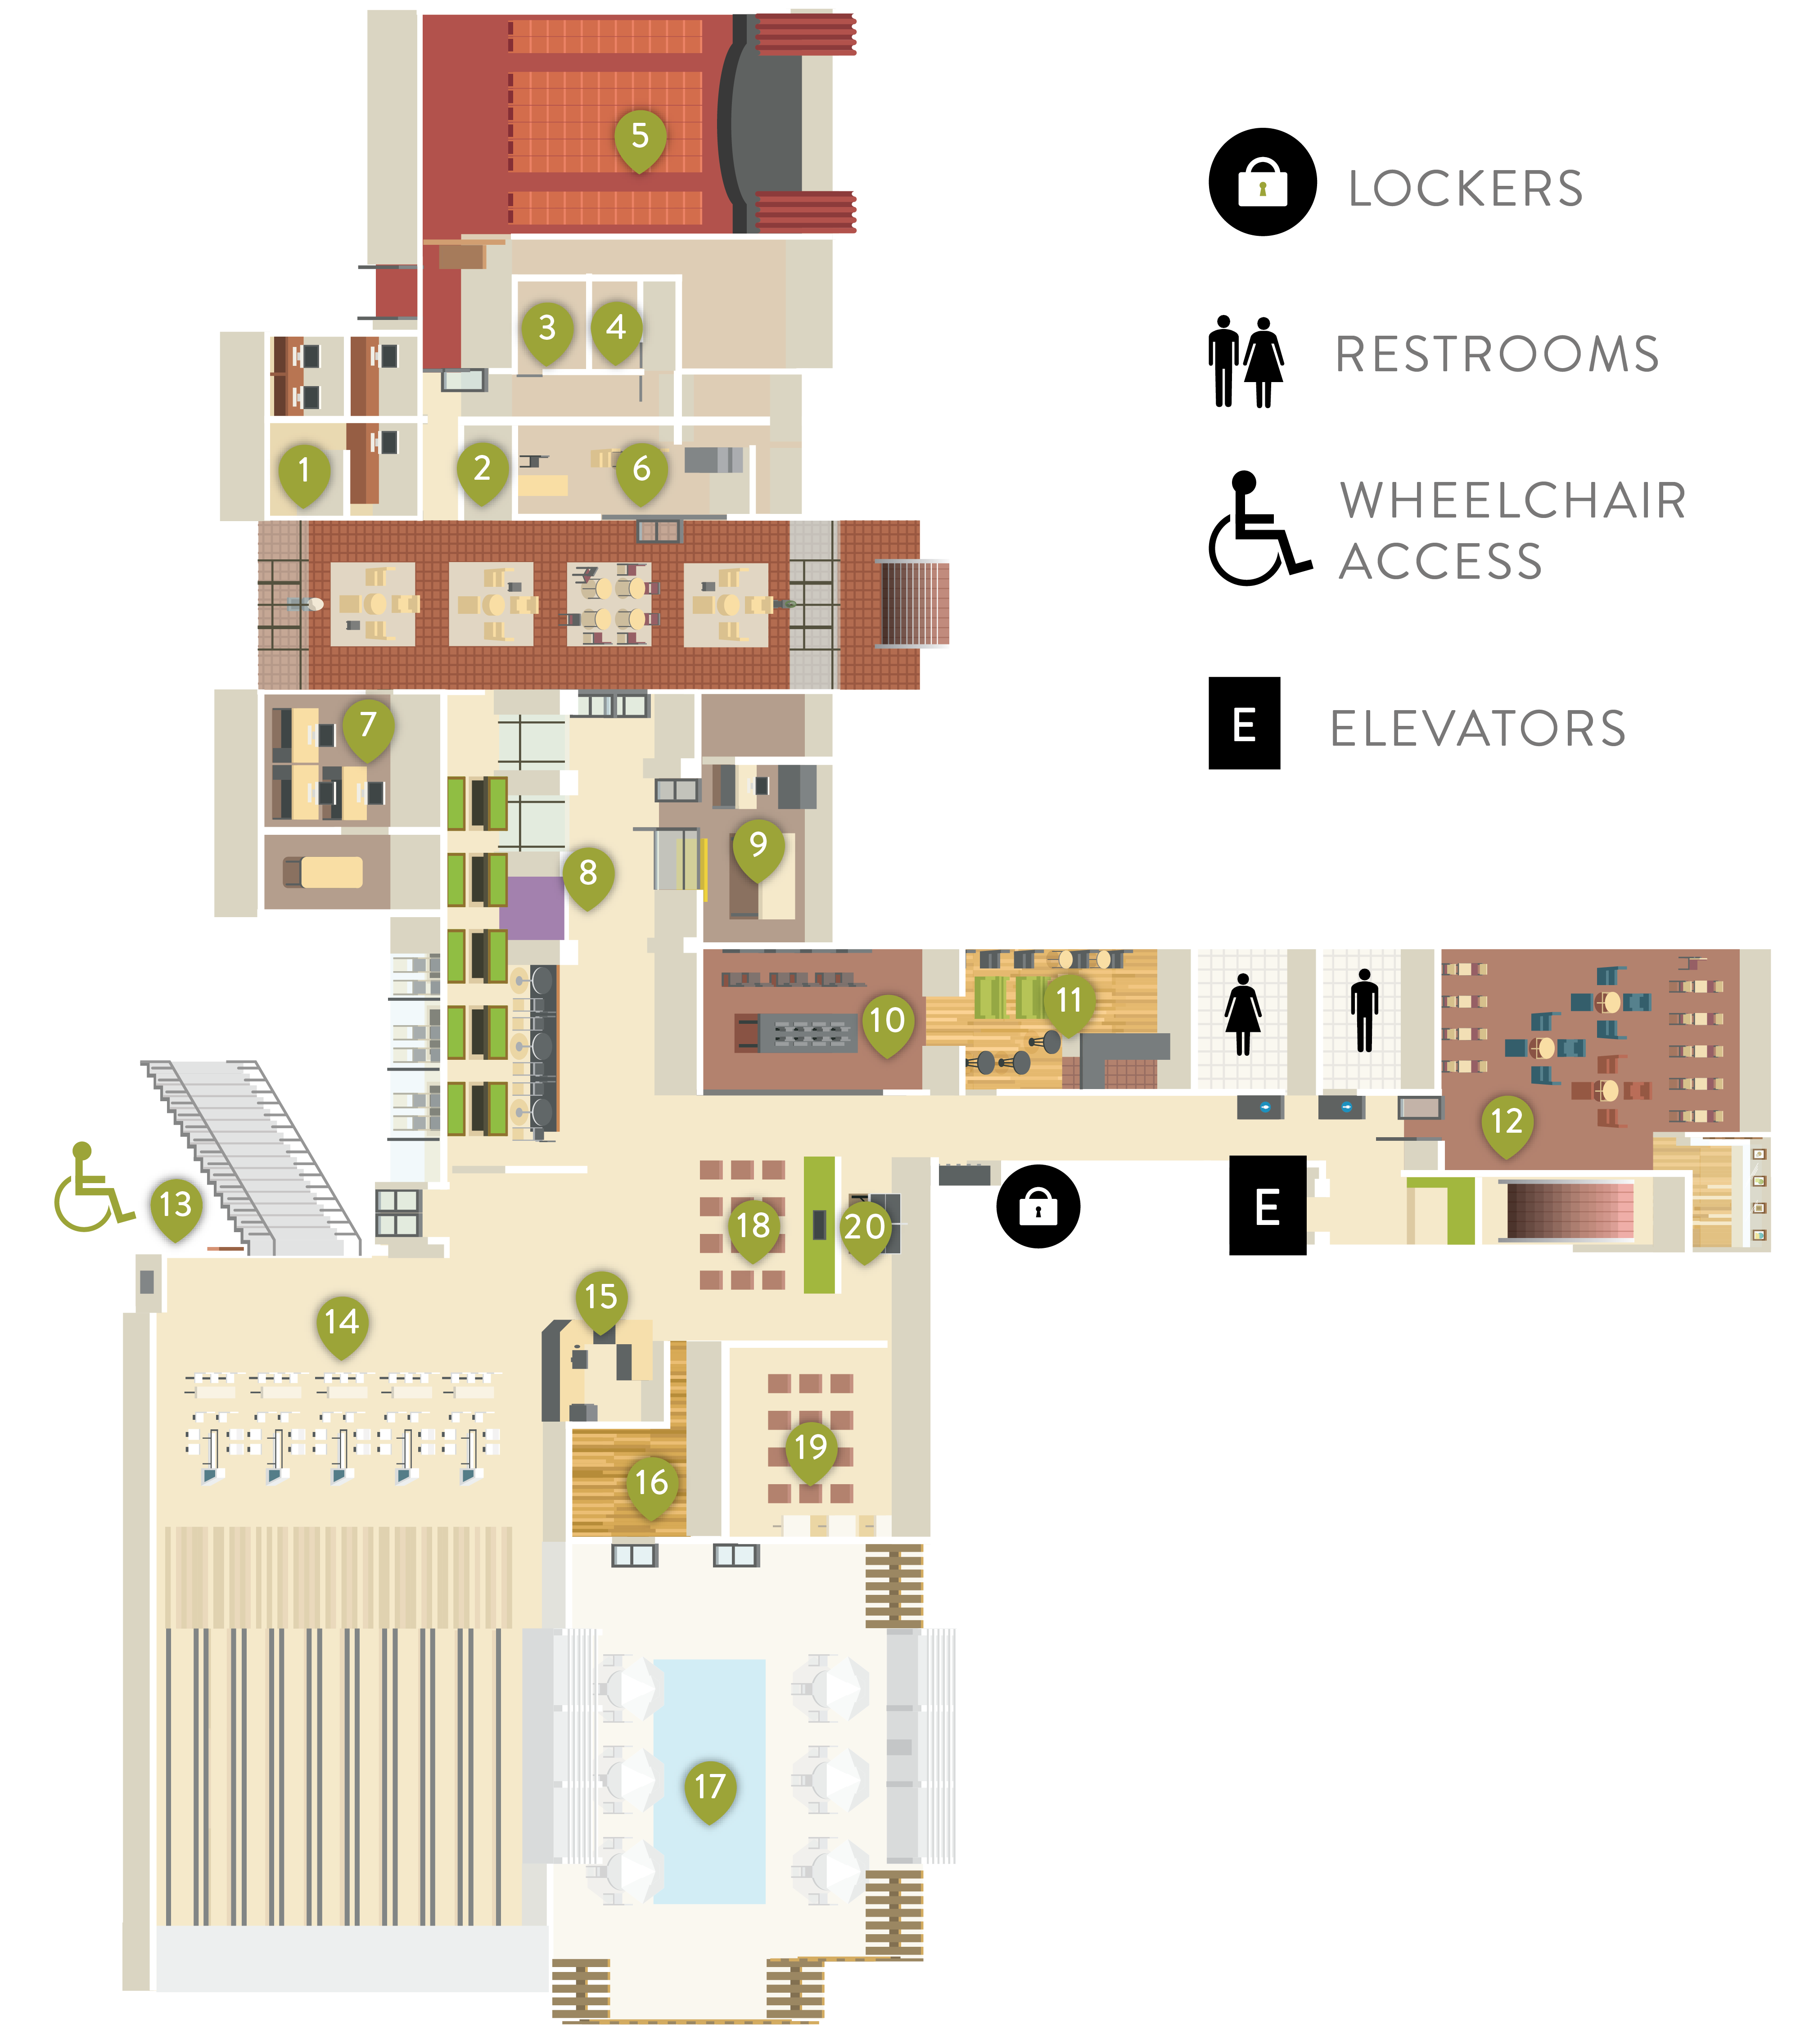 Floor Map of 1st Floor of the USU